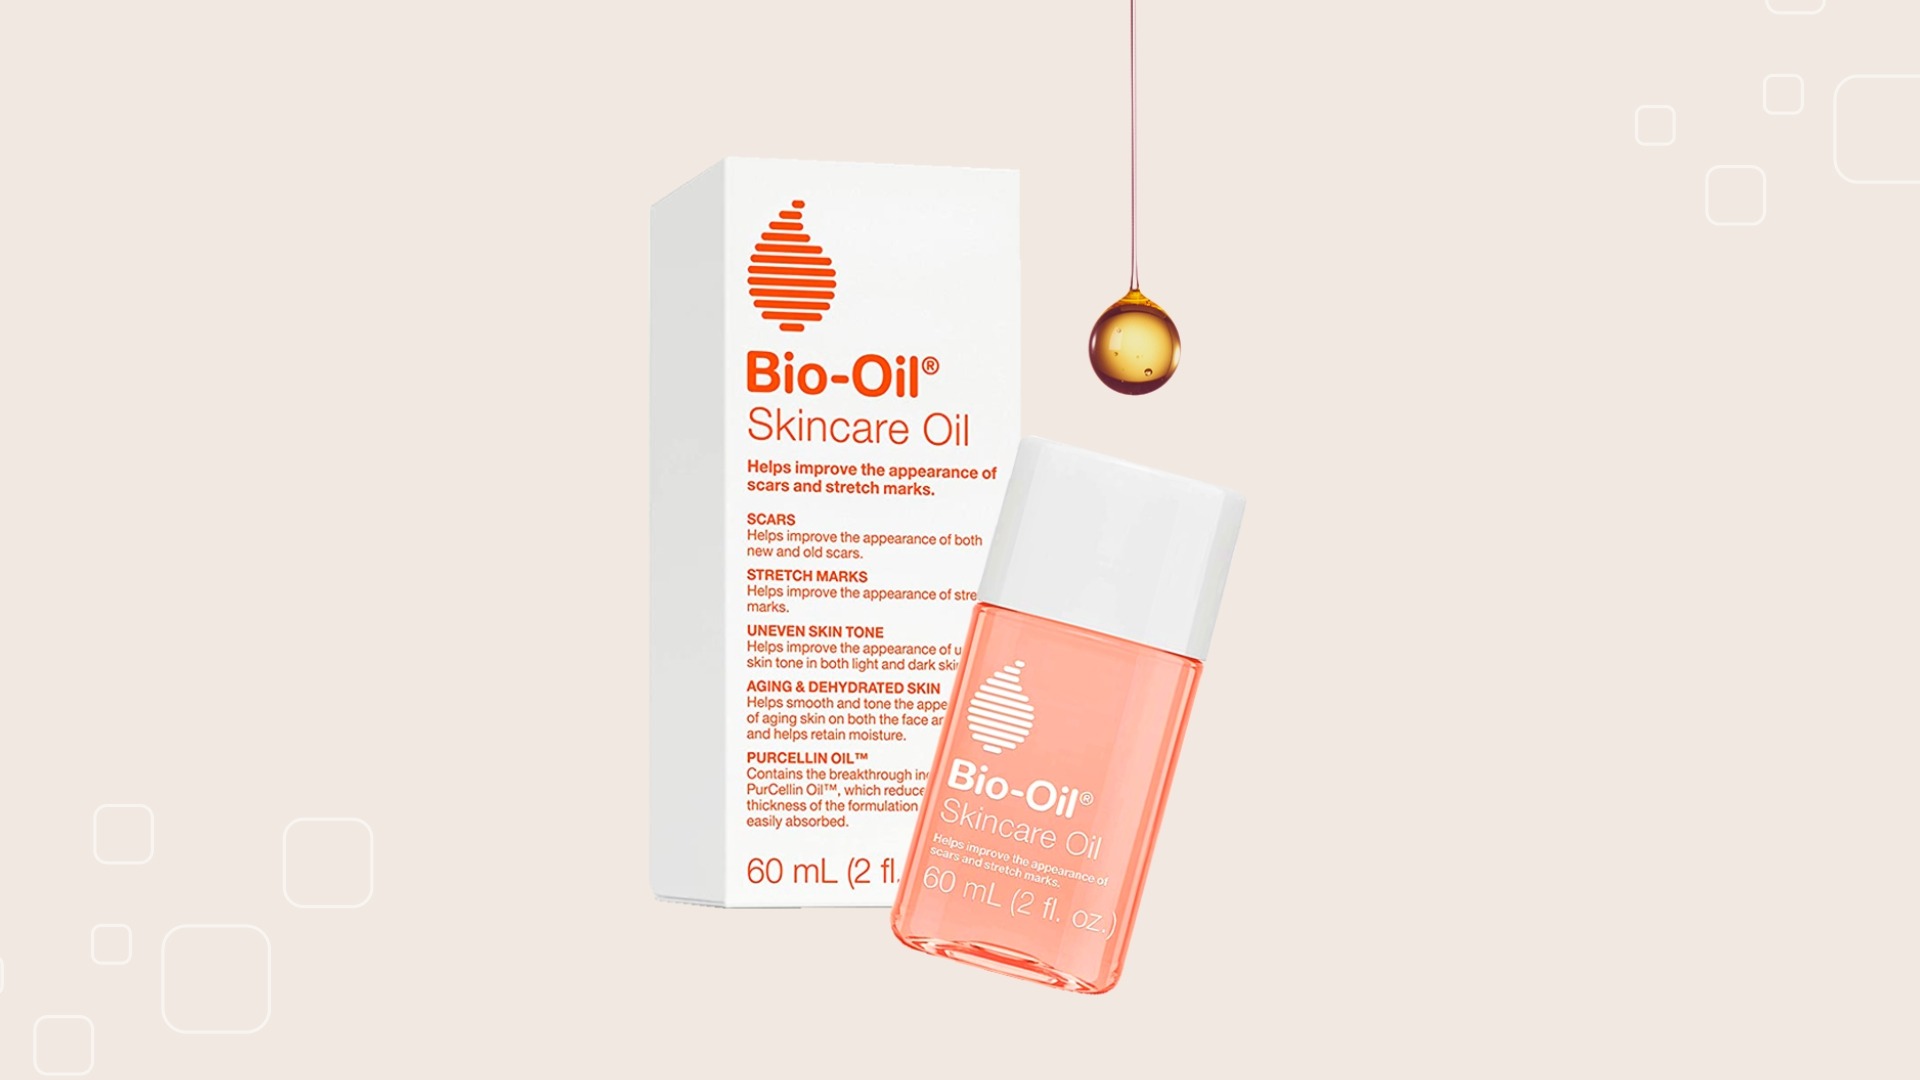 6. Bio-Oil Skincare Oil